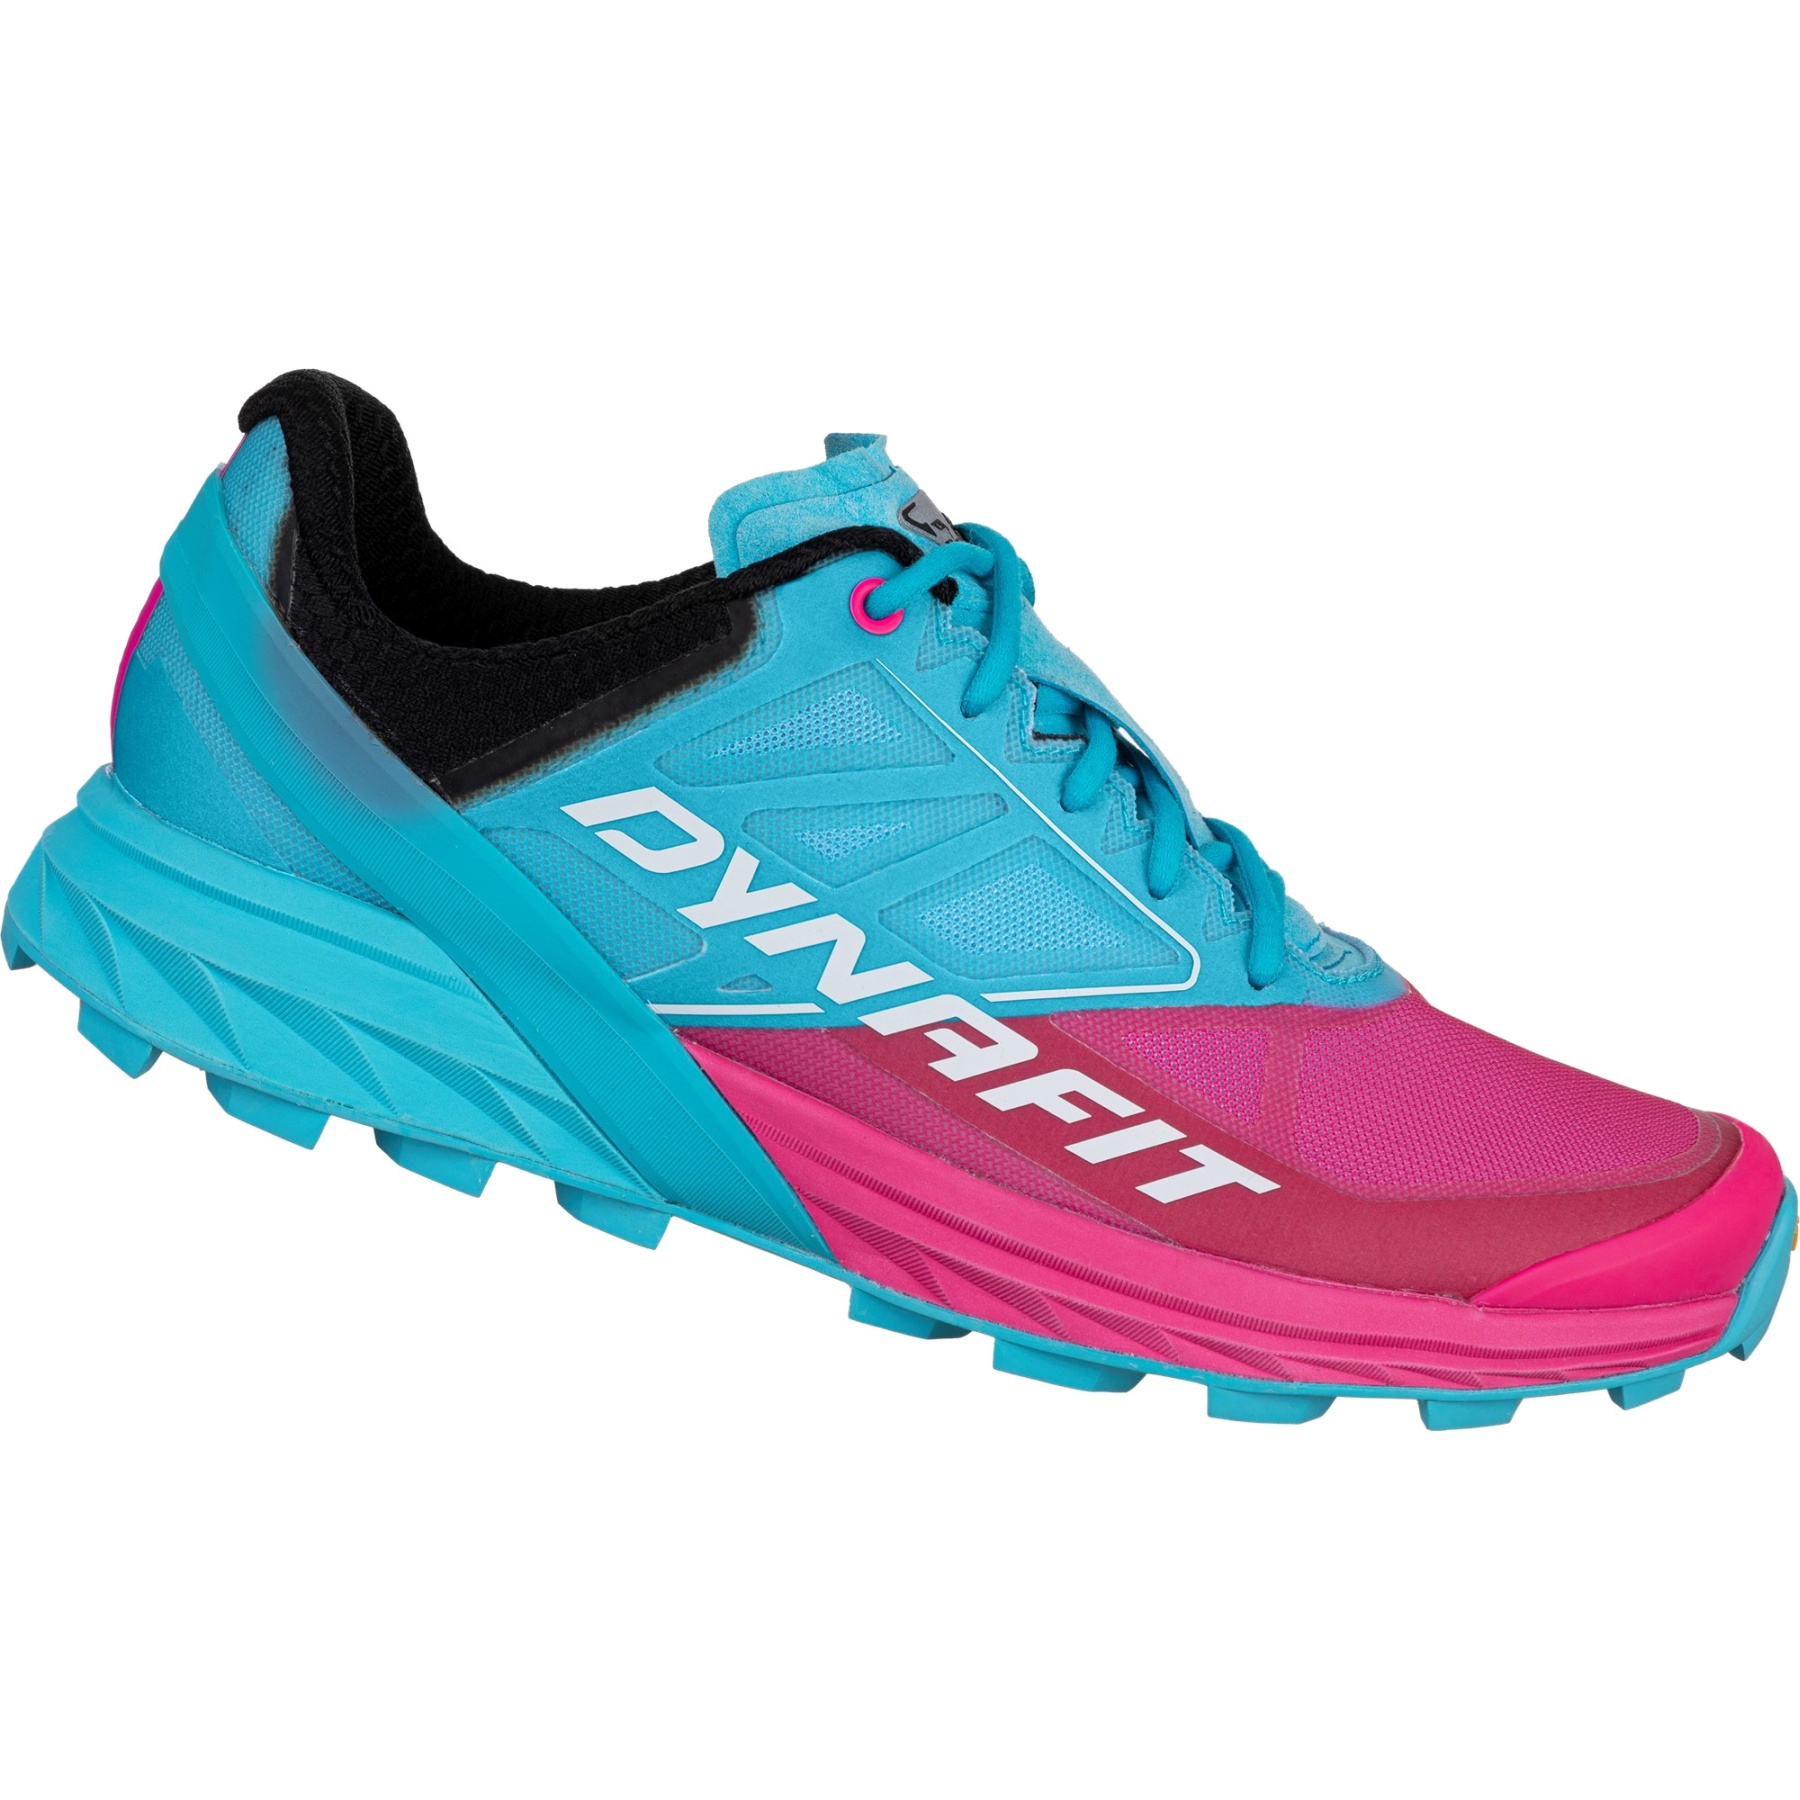 Productfoto van Dynafit Alpine Hardloopschoenen Dames - Turquoise Pink Glo